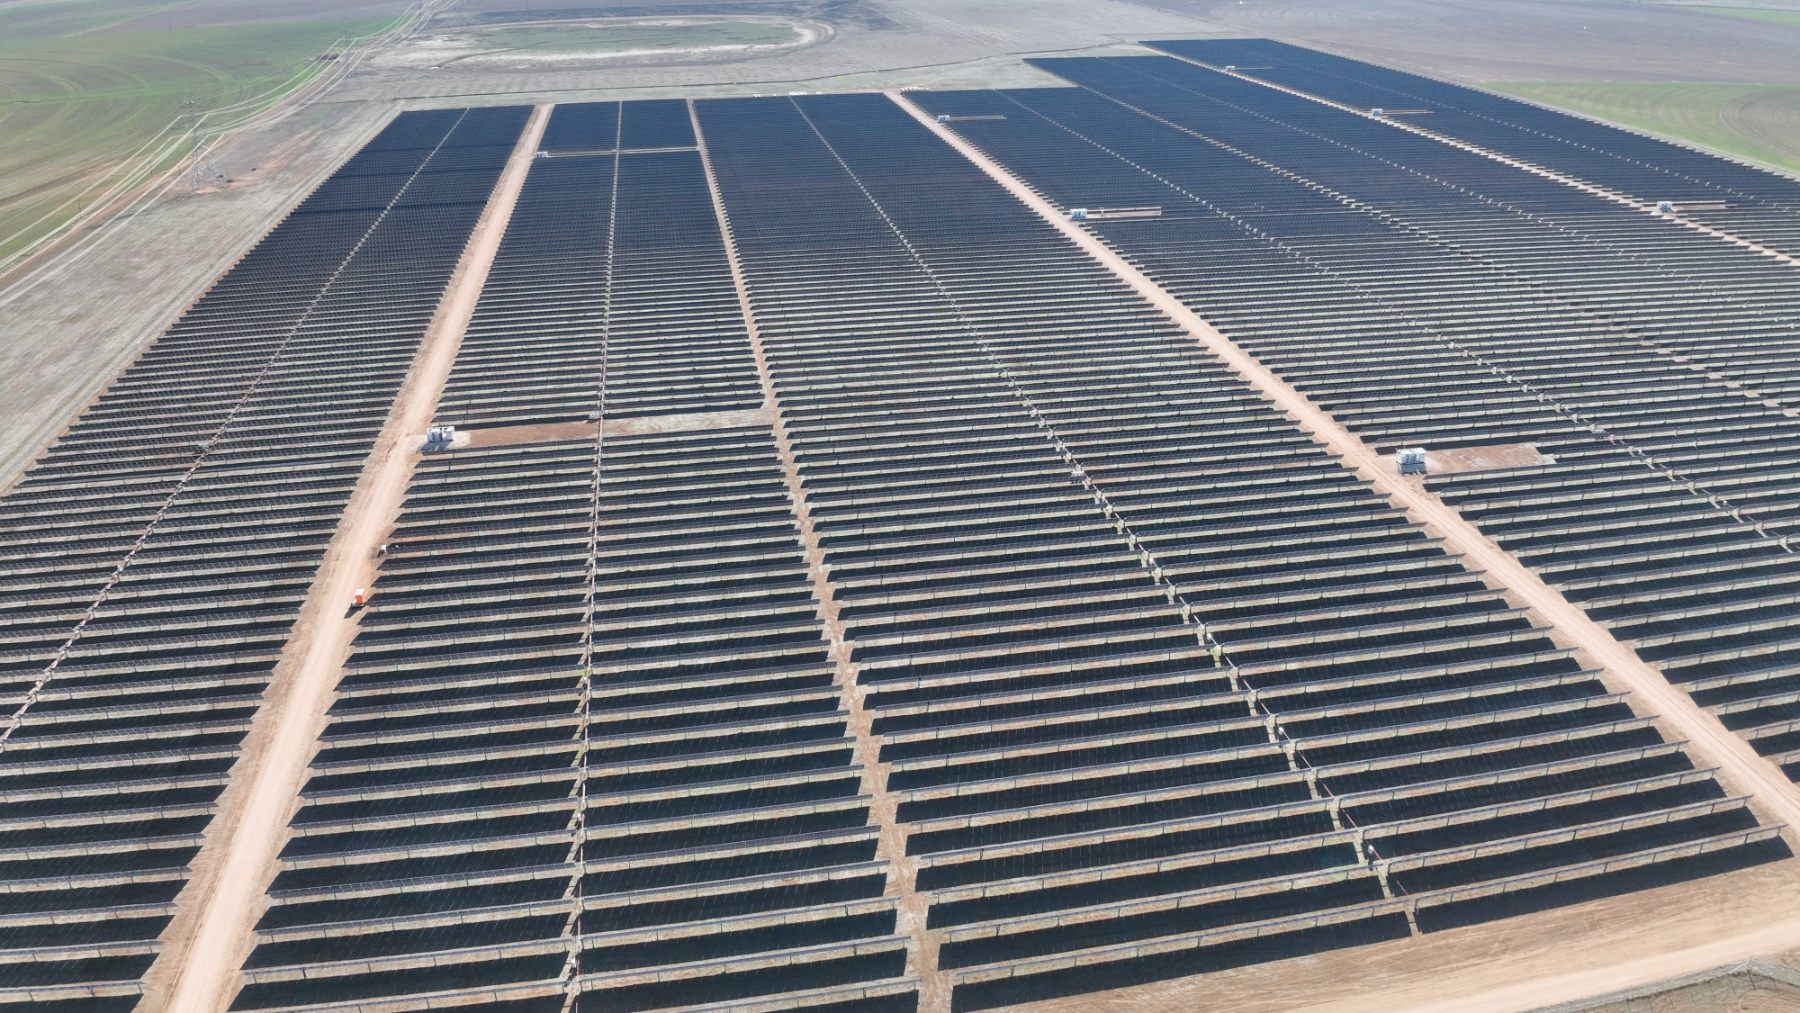 Repsol ya opera otras dos plantas solares en Estados Unidos, ambas en Nuevo México – Jicarilla 1 y 2 –, con un total de 125 MW de capacidad instalada y 20 MW de almacena- miento en baterías